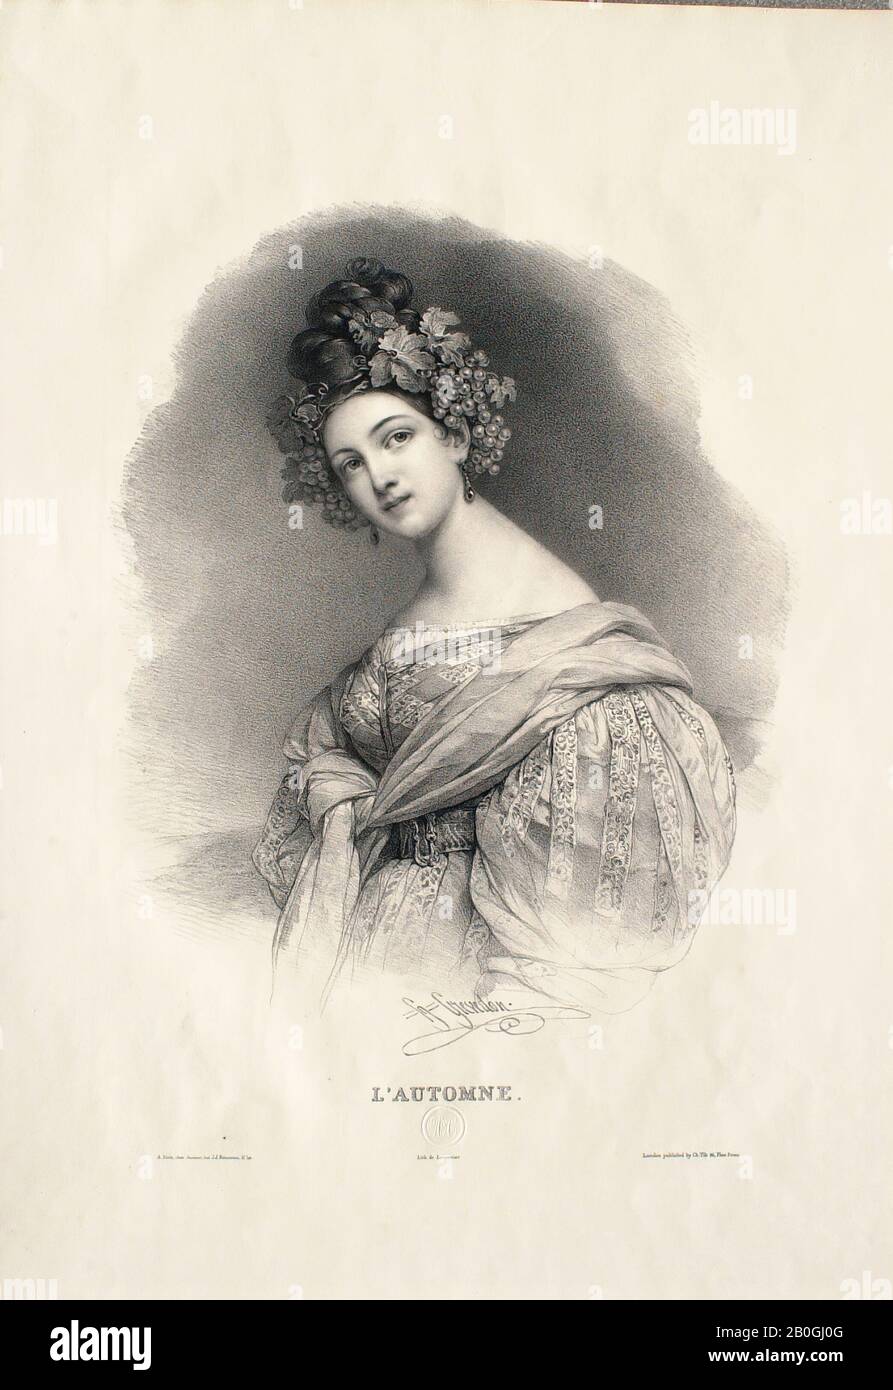 Henri Grevedon, French, 1776–1860, Les quatre saisons: L'automne, 1786–1860, Lithograph on wove paper, sheet: 22 1/4 x 15 1/2 in. (56.5 x 39.4 cm Stock Photo